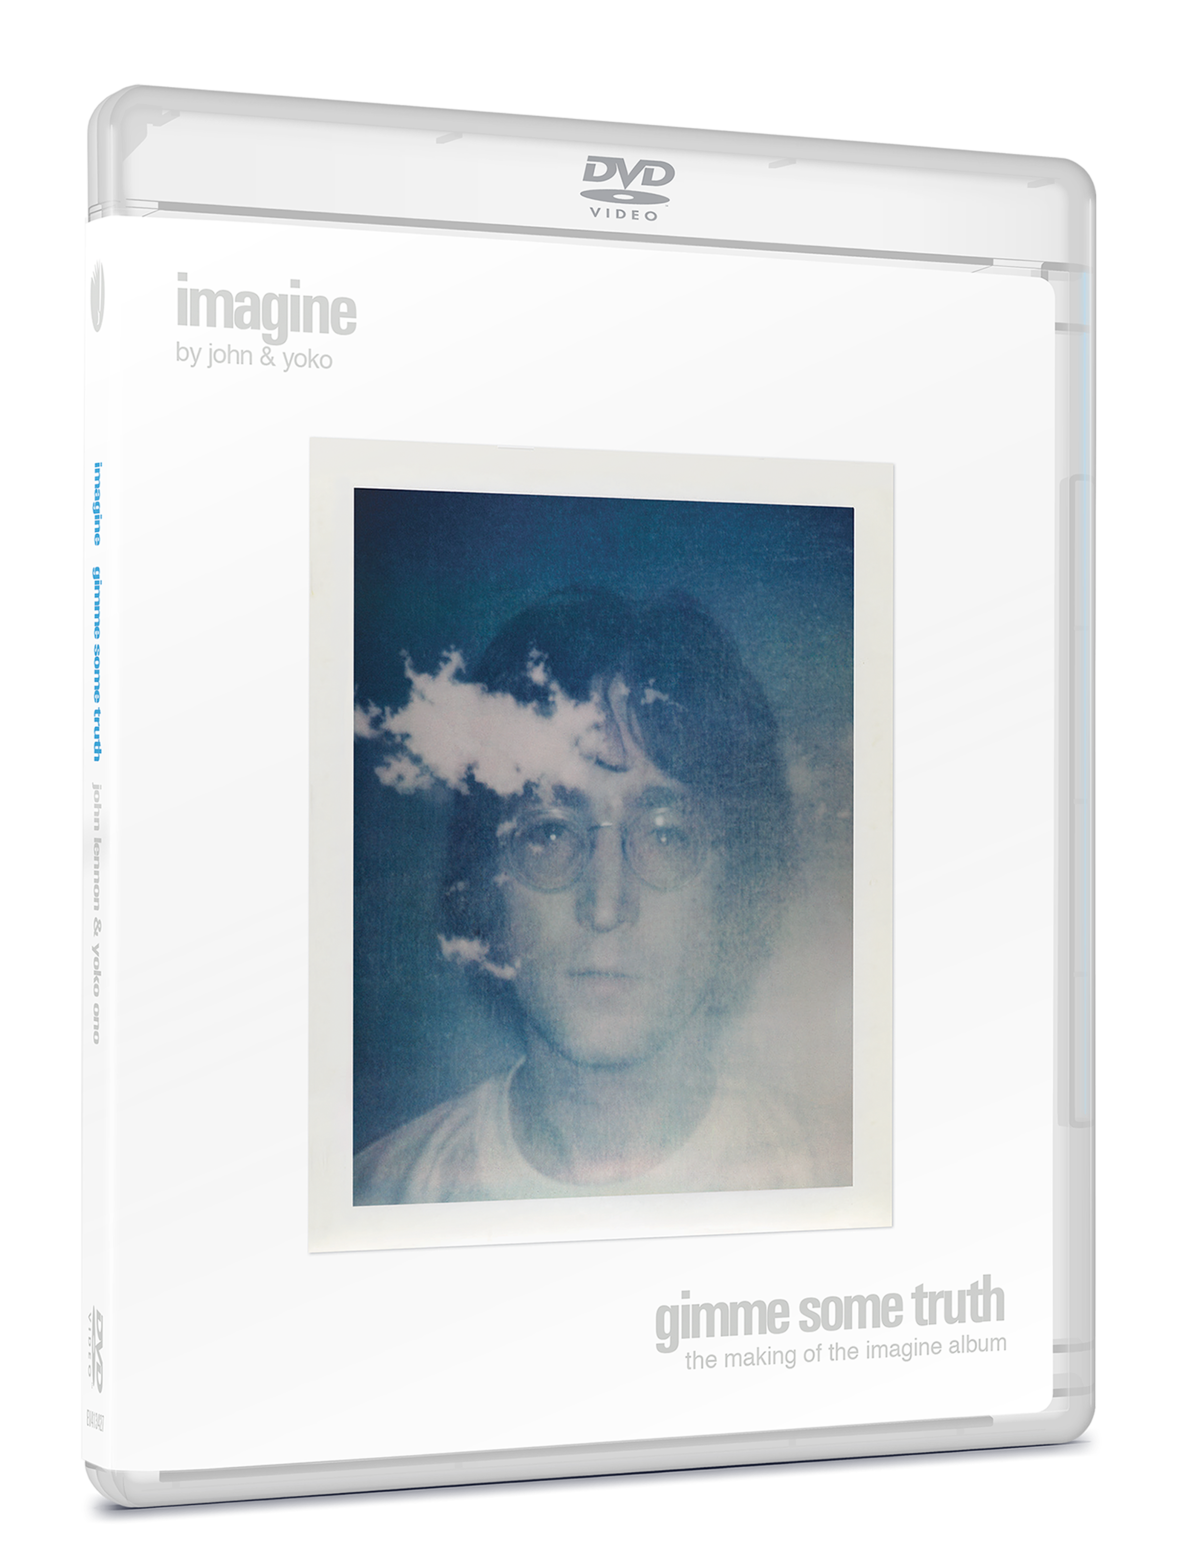 Imagine box. John Lennon imagine album Cover. Lennon and Yoko album. John Lennon Gimme Truth DVD. John Lennon - imagine.